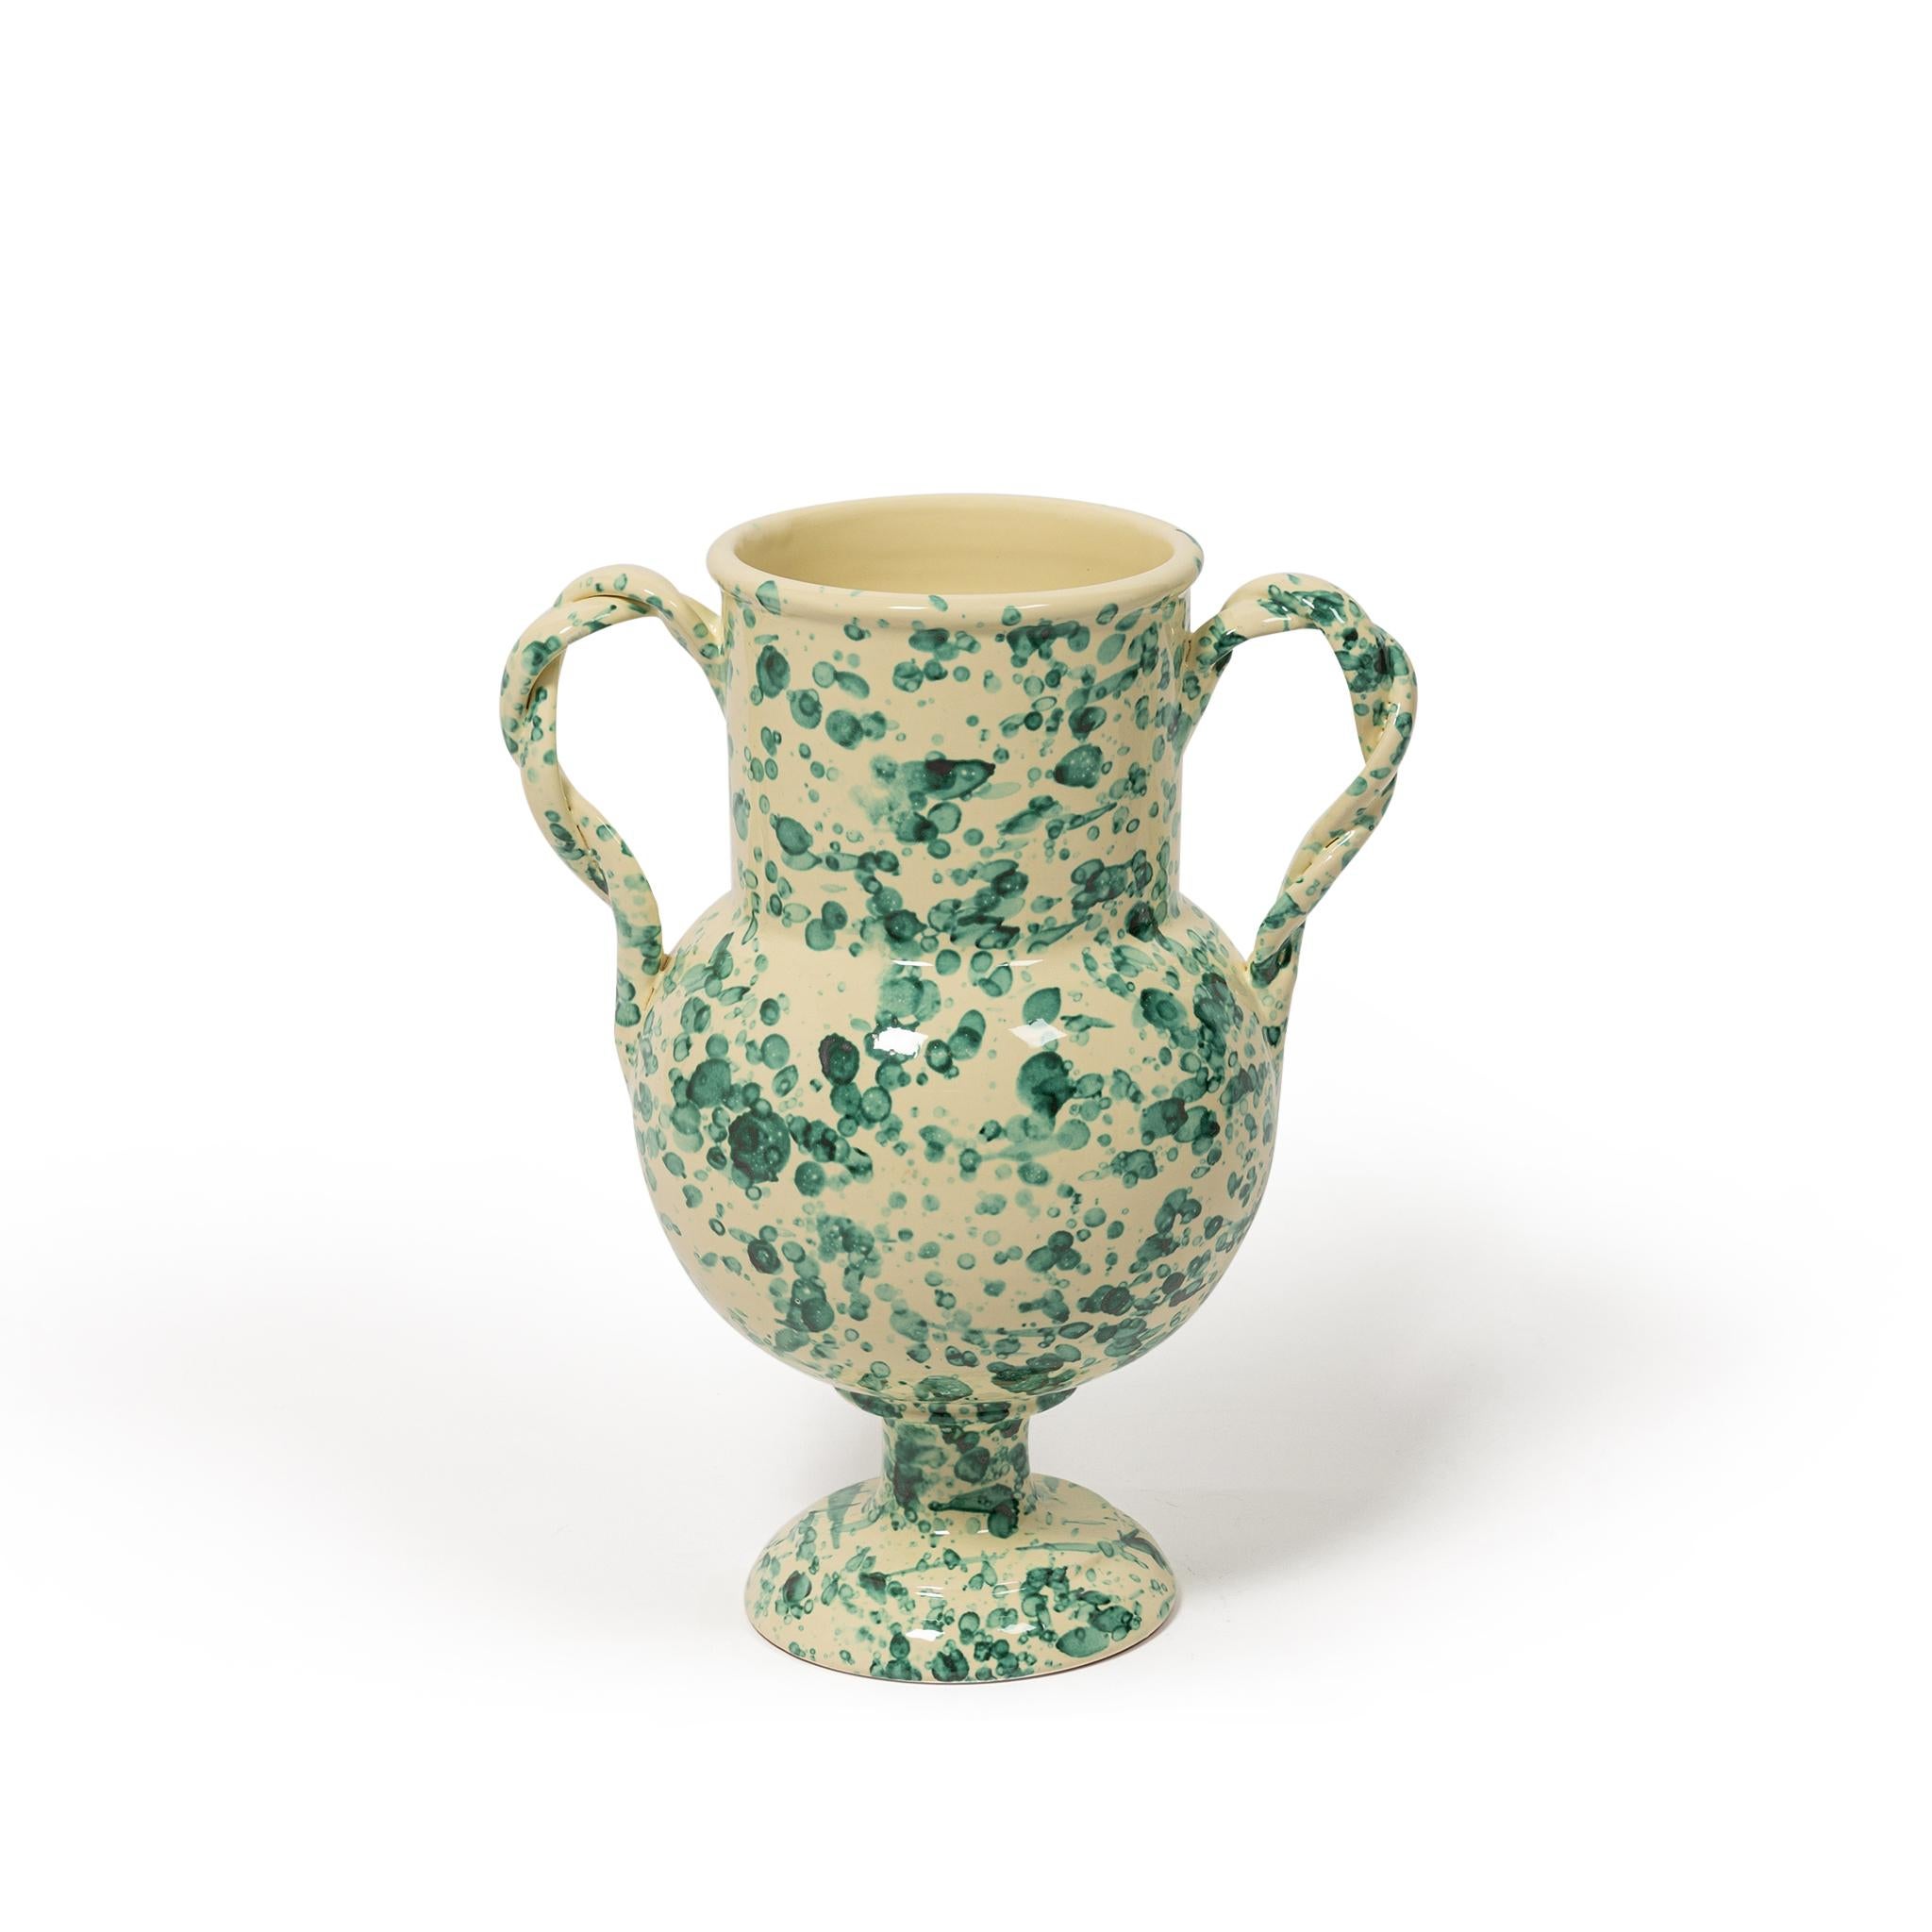 Die in Italien handgefertigte Vase Verona ist ein hervorragender Tafelaufsatz. Unser Design ist in drei Farbvarianten erhältlich: Rosa & Blau, Hellbraun & Elfenbein und Antikgrün.


Höhe: 30cm
Höhe: 12'6

Das von der Modejournalistin Louise Roe